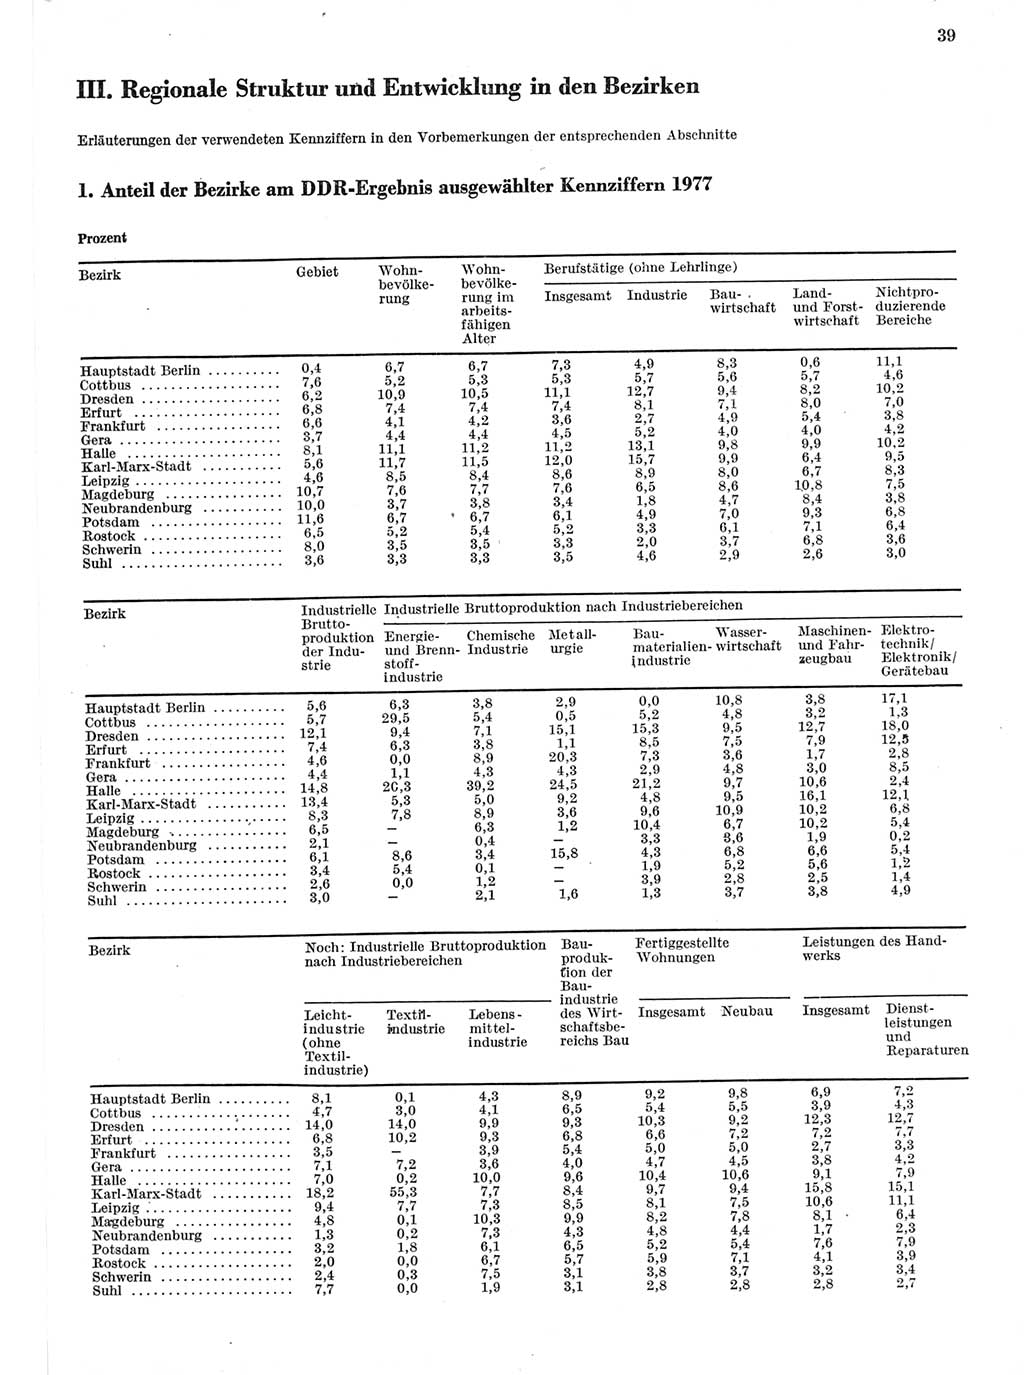 Statistisches Jahrbuch der Deutschen Demokratischen Republik (DDR) 1978, Seite 39 (Stat. Jb. DDR 1978, S. 39)